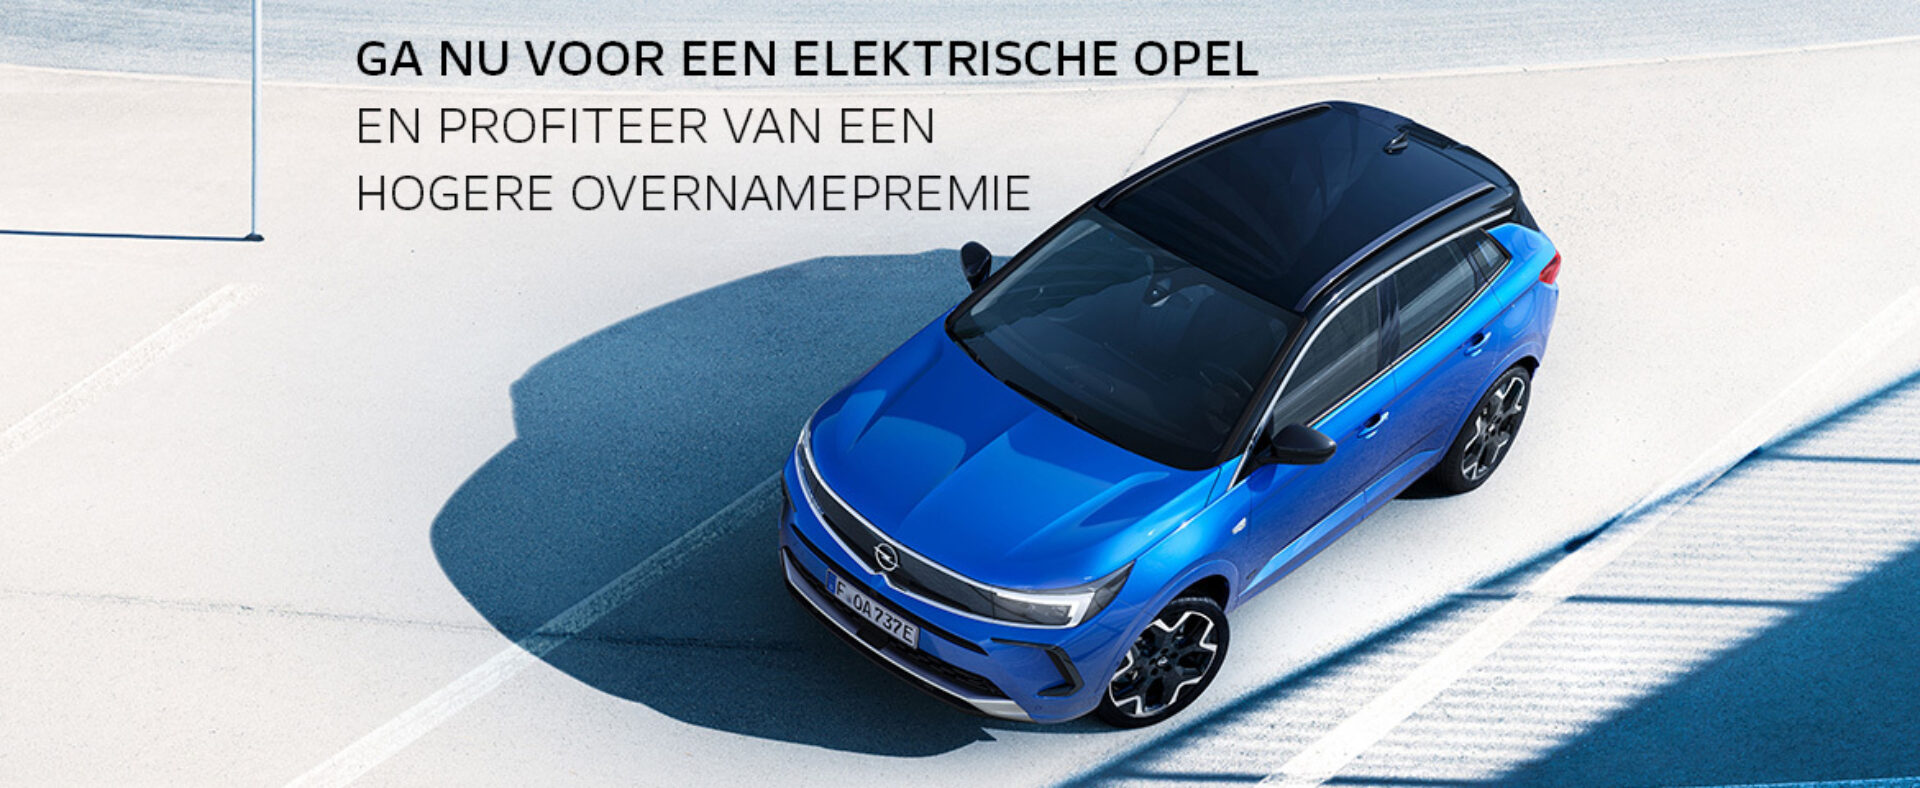 202205 Opel Actie